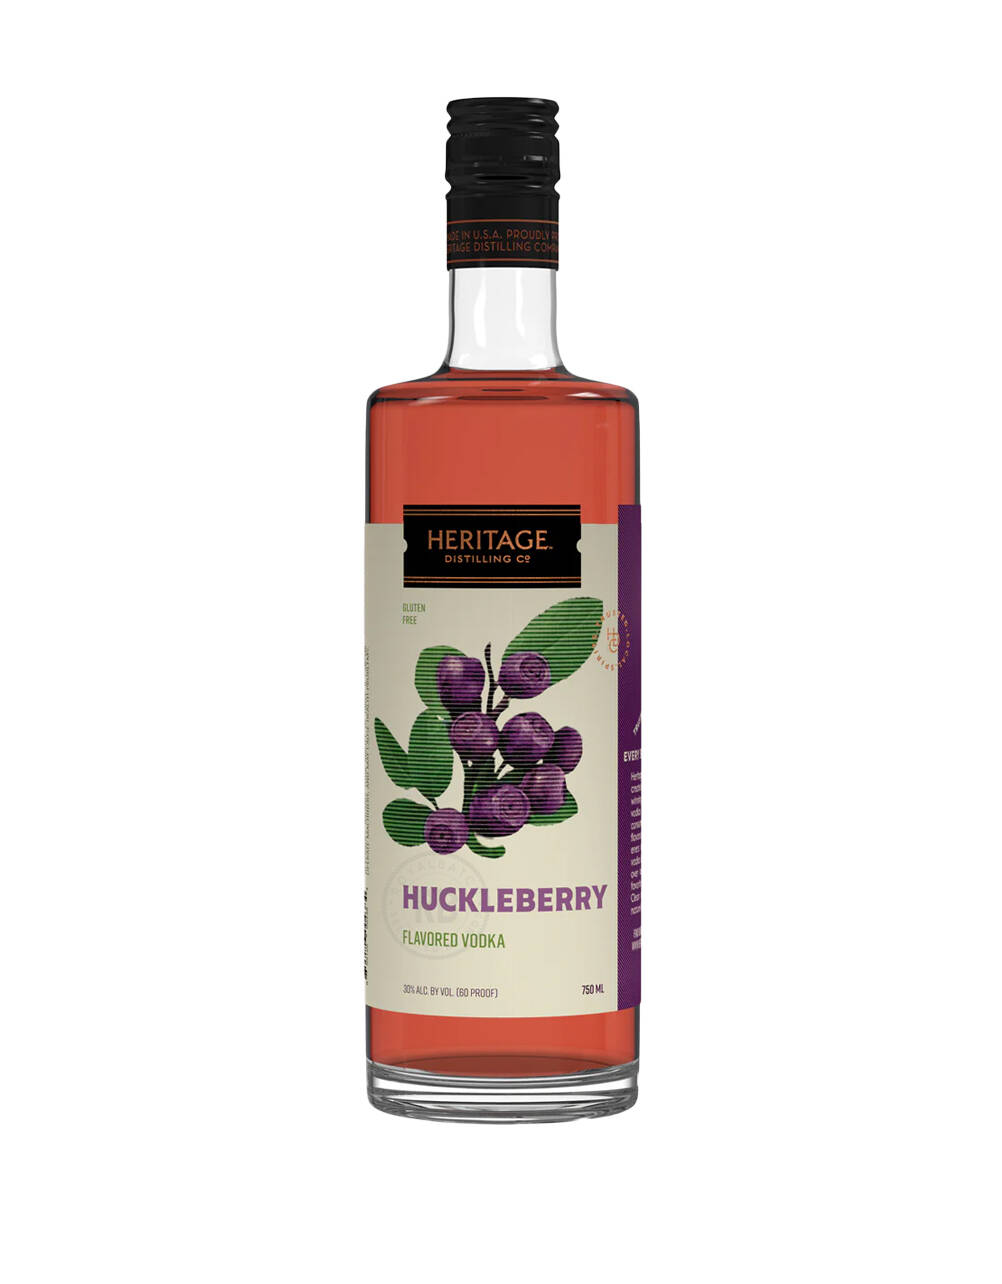 Heritage Distilling Co Huckleberry Flavored Vodka